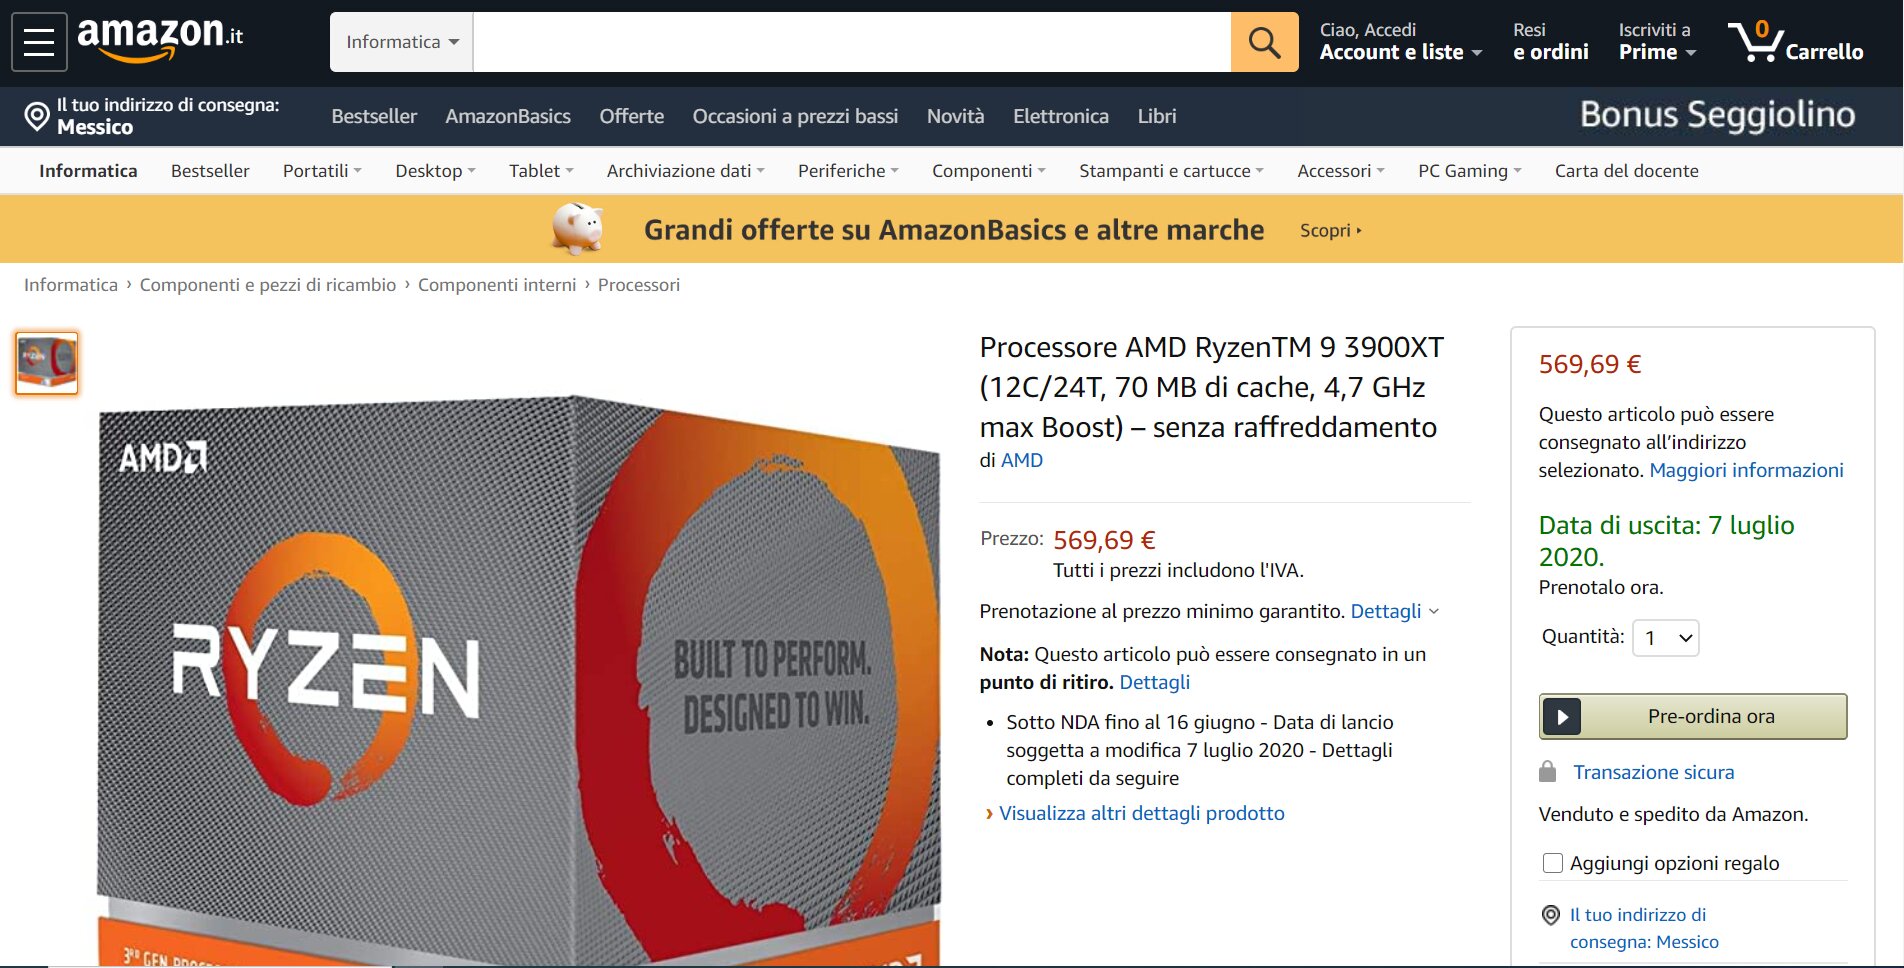 AMD Ryzen 9 3900XT auf Amazon Italien